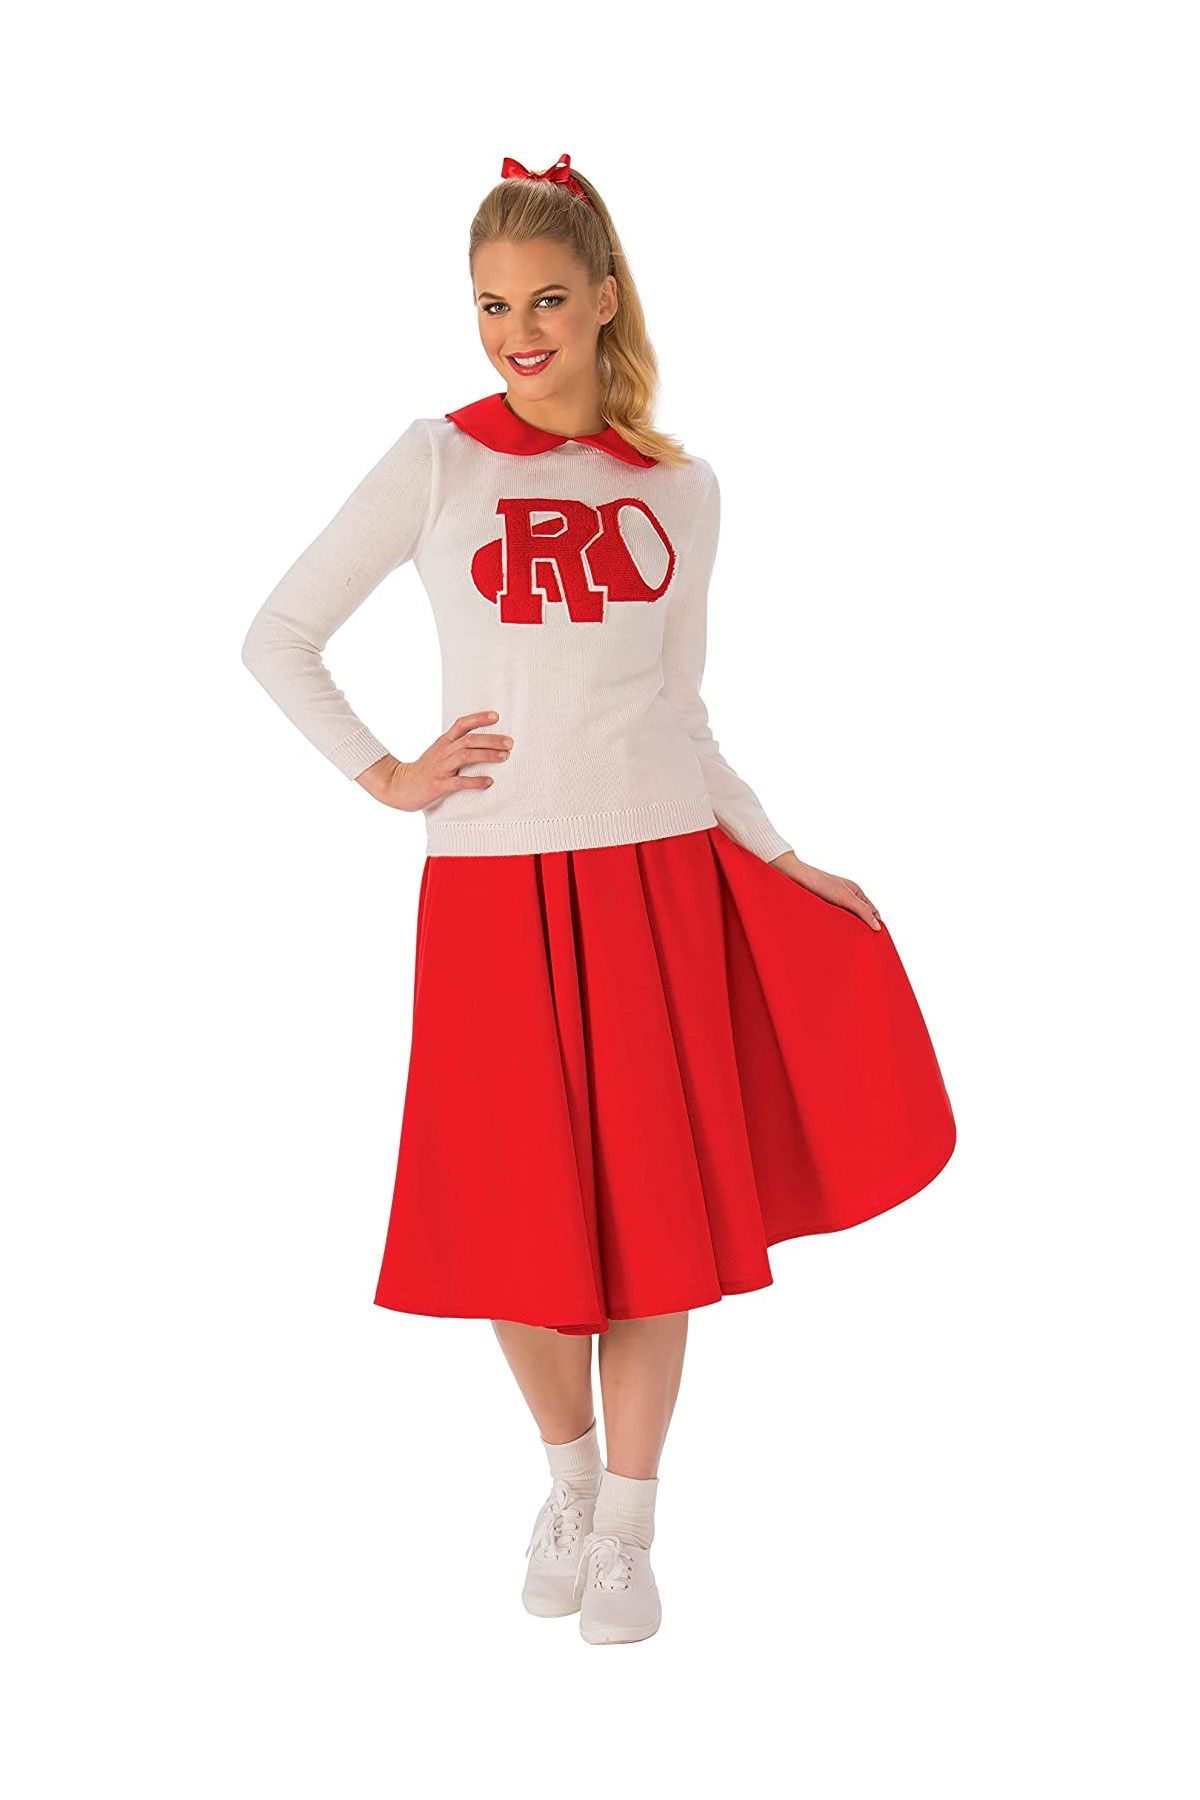 LADIES RED & WHITE GREASE SANDY CHEERLEADER FANCY DRESS COSTUME